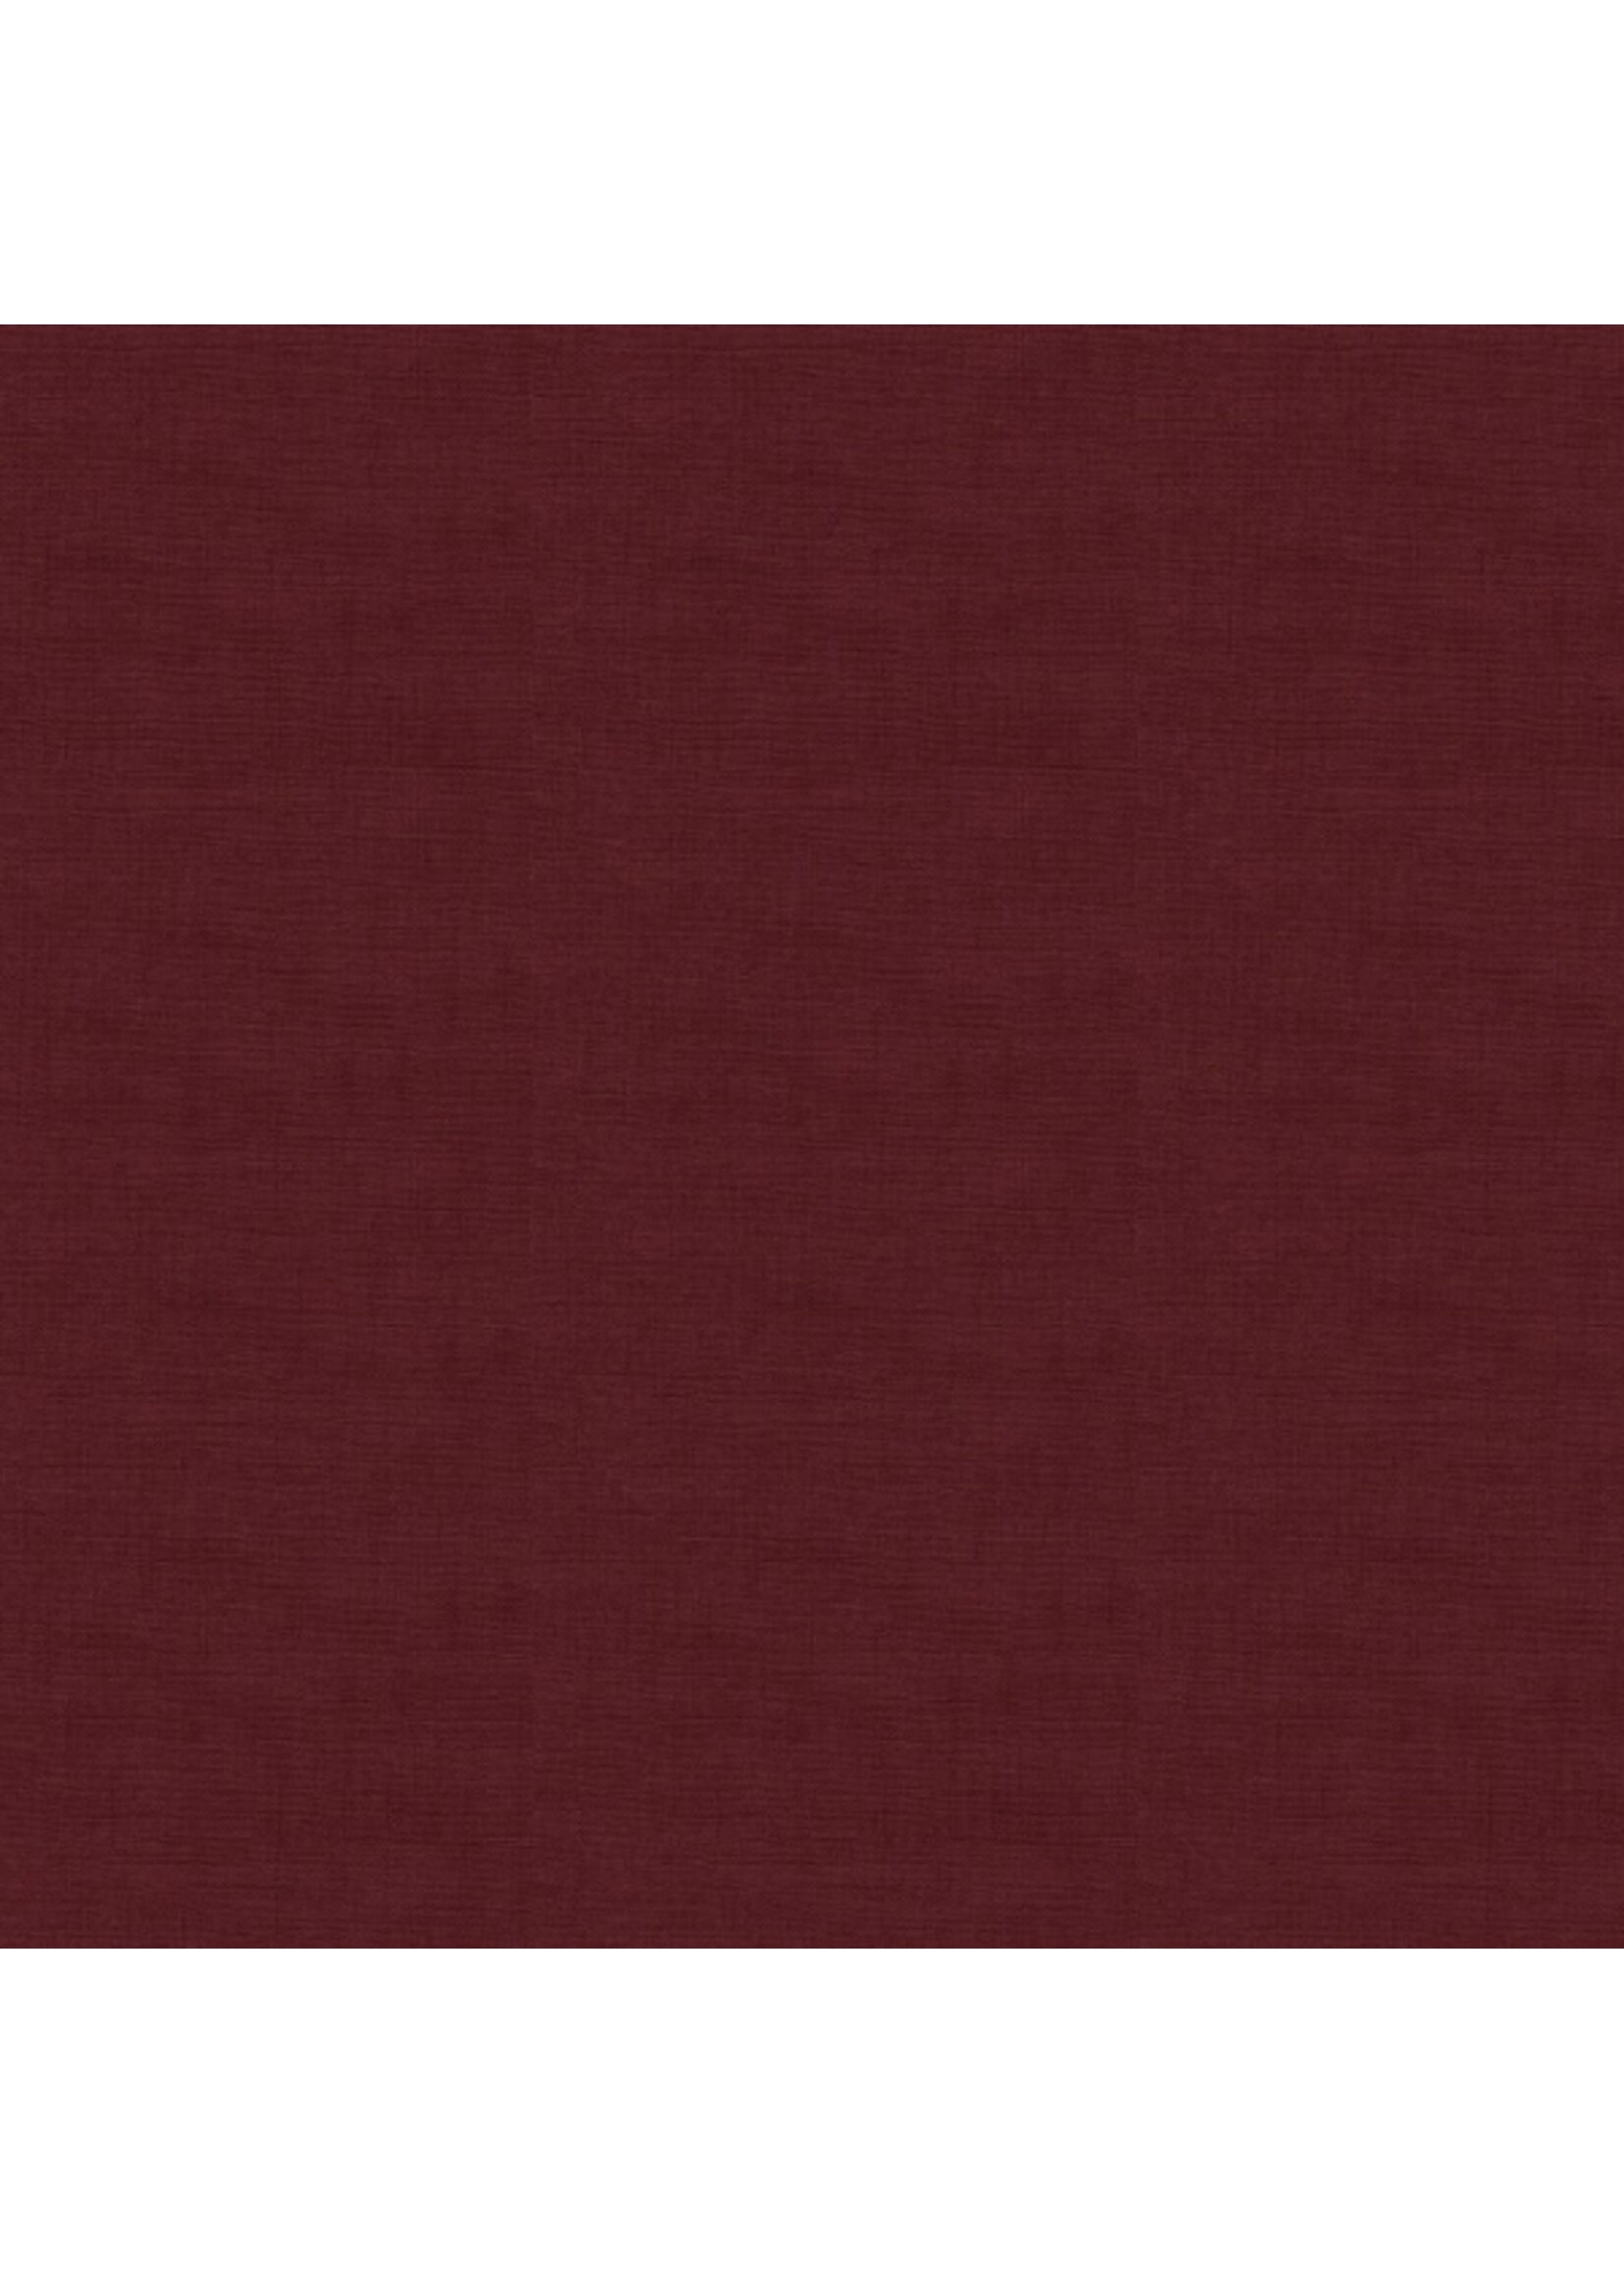 Makower Linen Texture - Burgundy - 1473R8